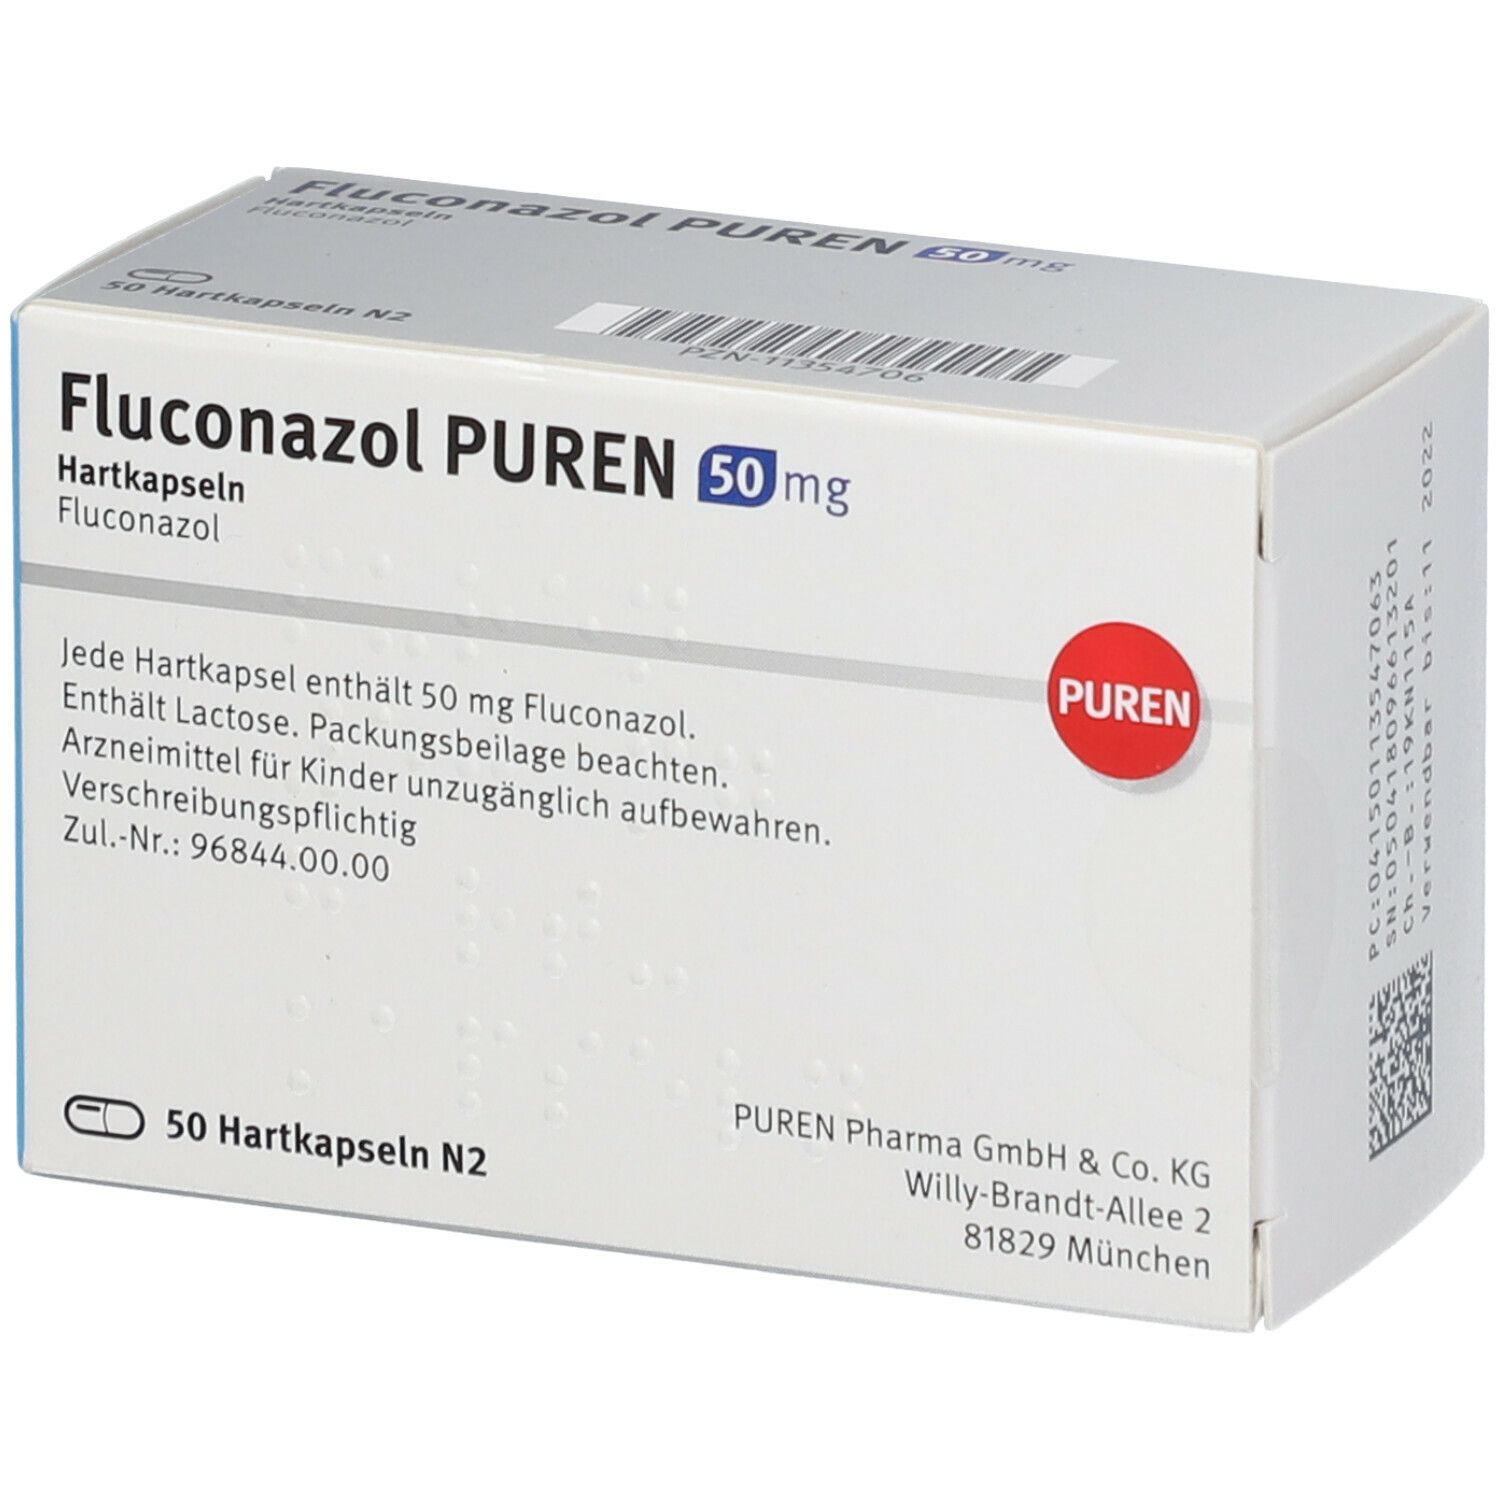 Fluconazol PUREN 50 mg